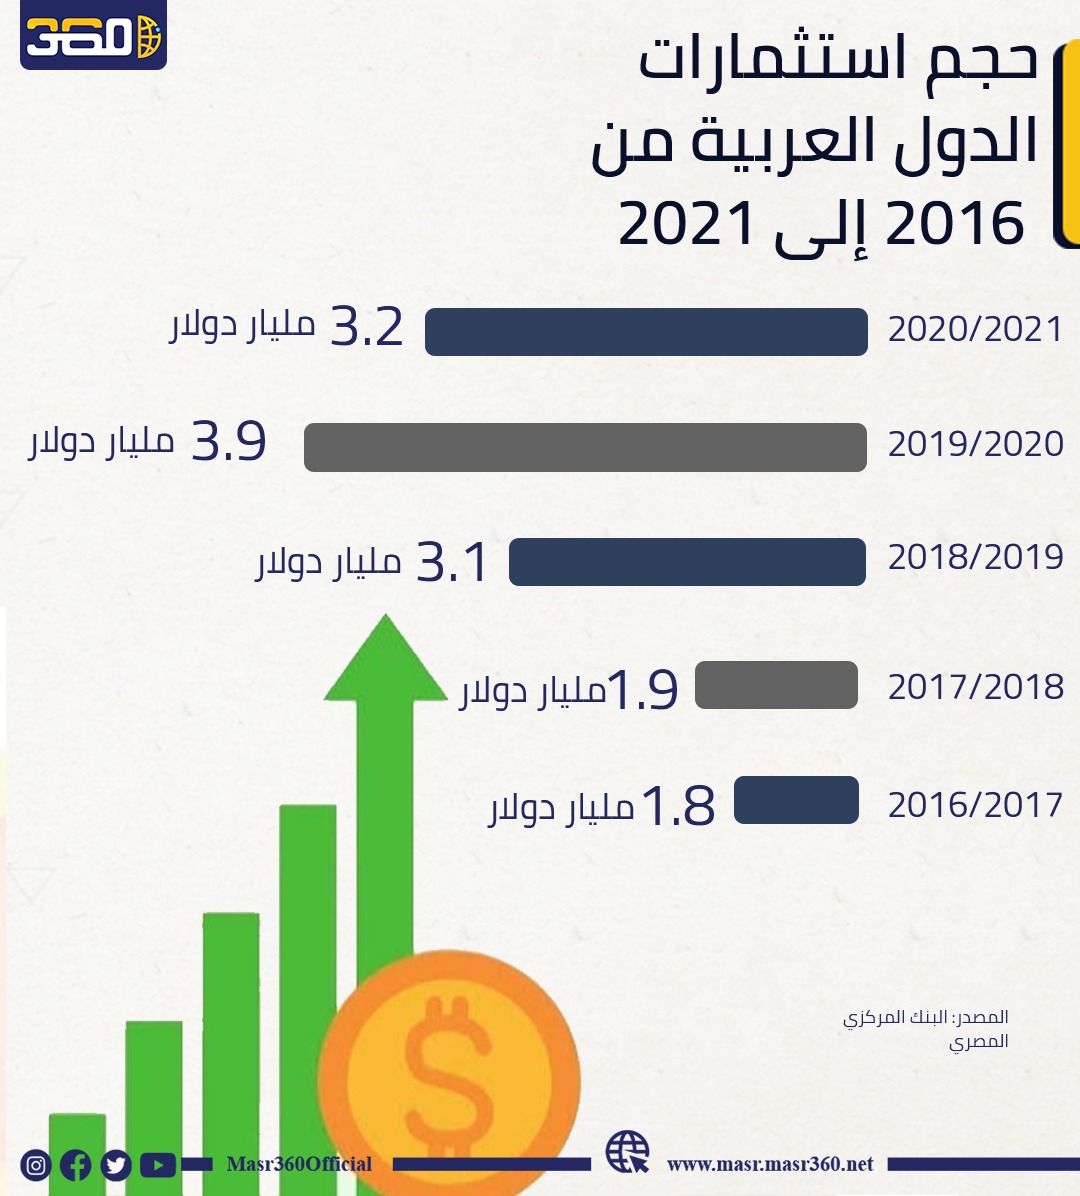 حجم استثمارات الدول العربية من 2021 إلى 2016